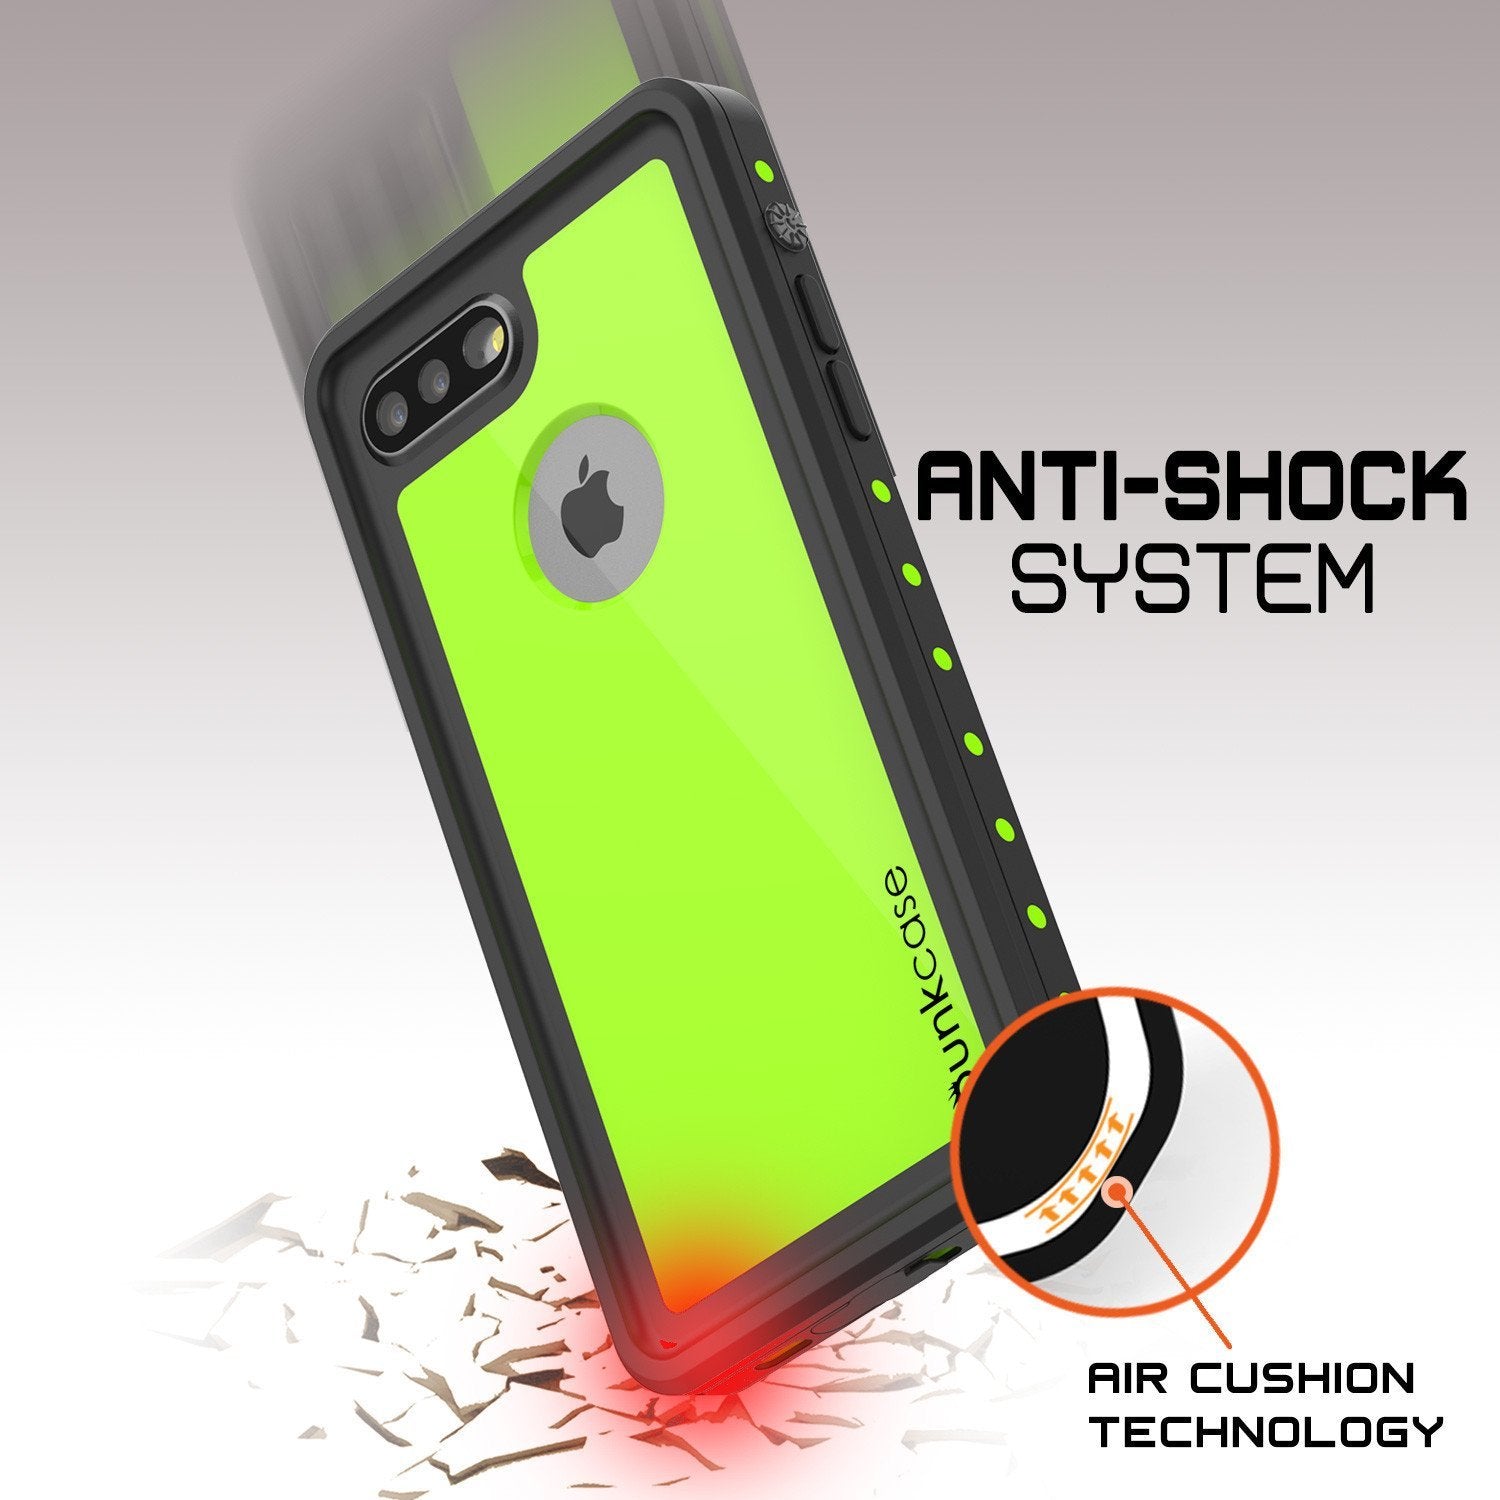 iPhone 8+ Plus Waterproof Case, Punkcase [StudStar] [Light Green] [Slim Fit] [IP68 Certified] [Shockproof] [Dirtproof] Armor Cover